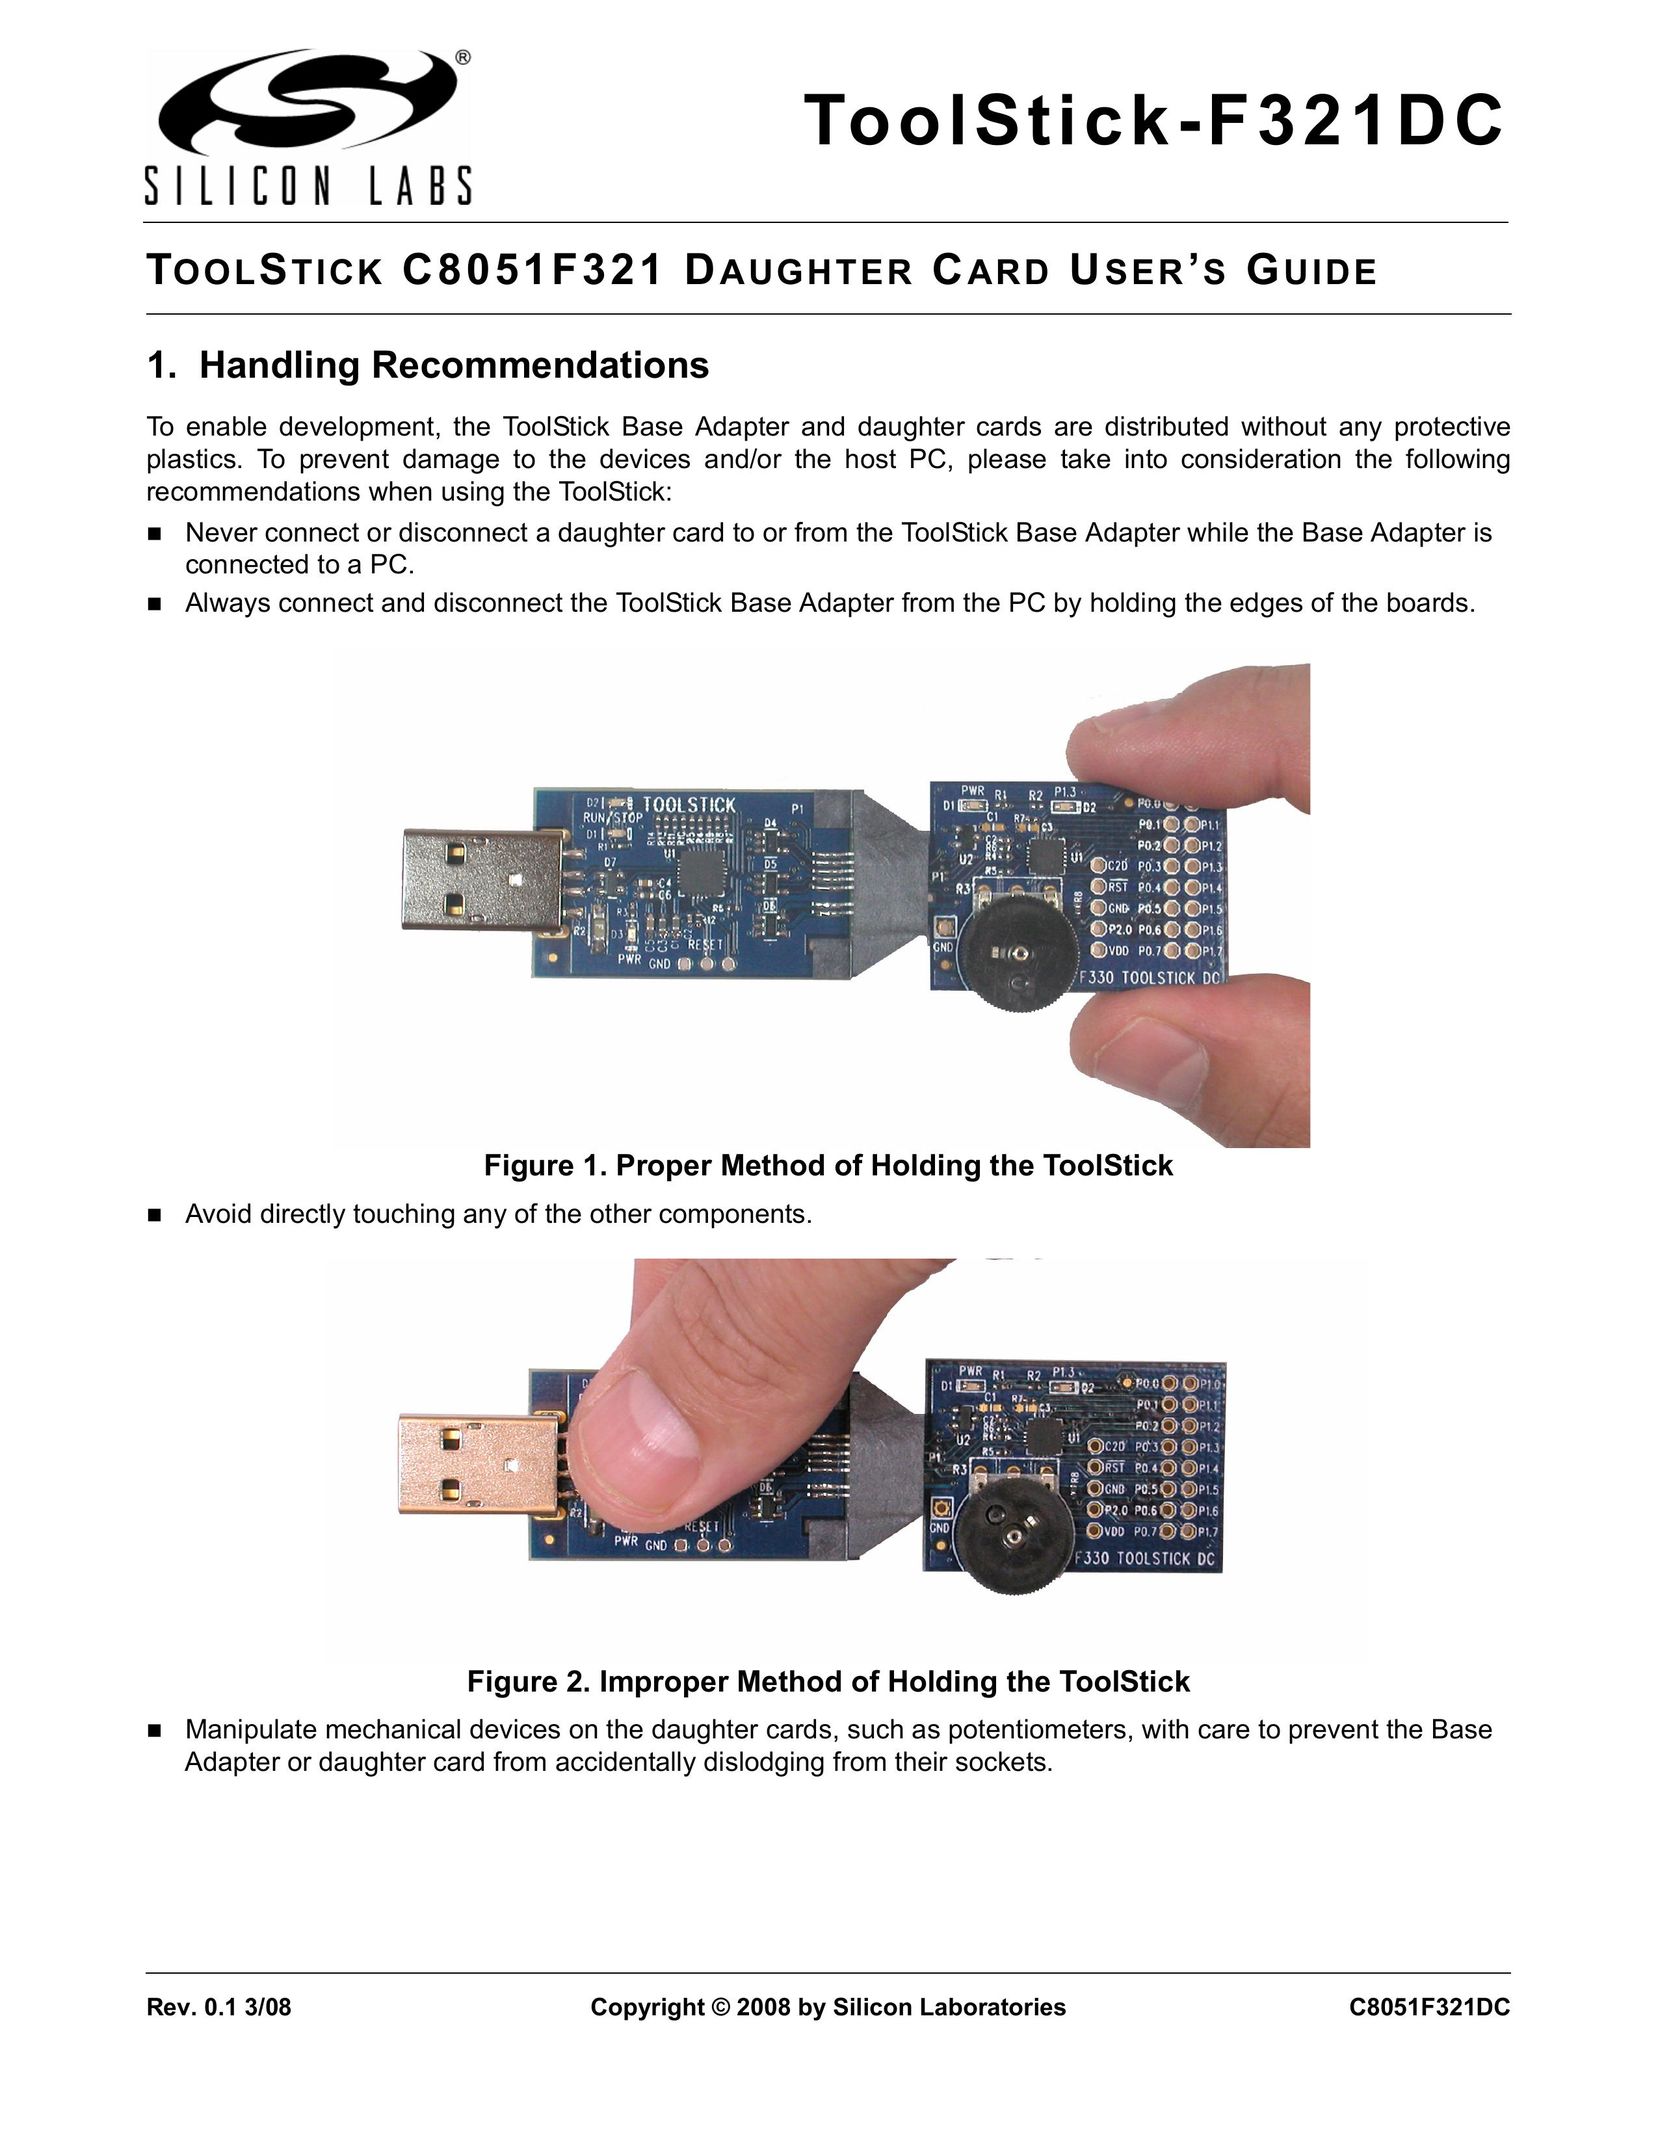 Silicon Laboratories F321DC Computer Accessories User Manual